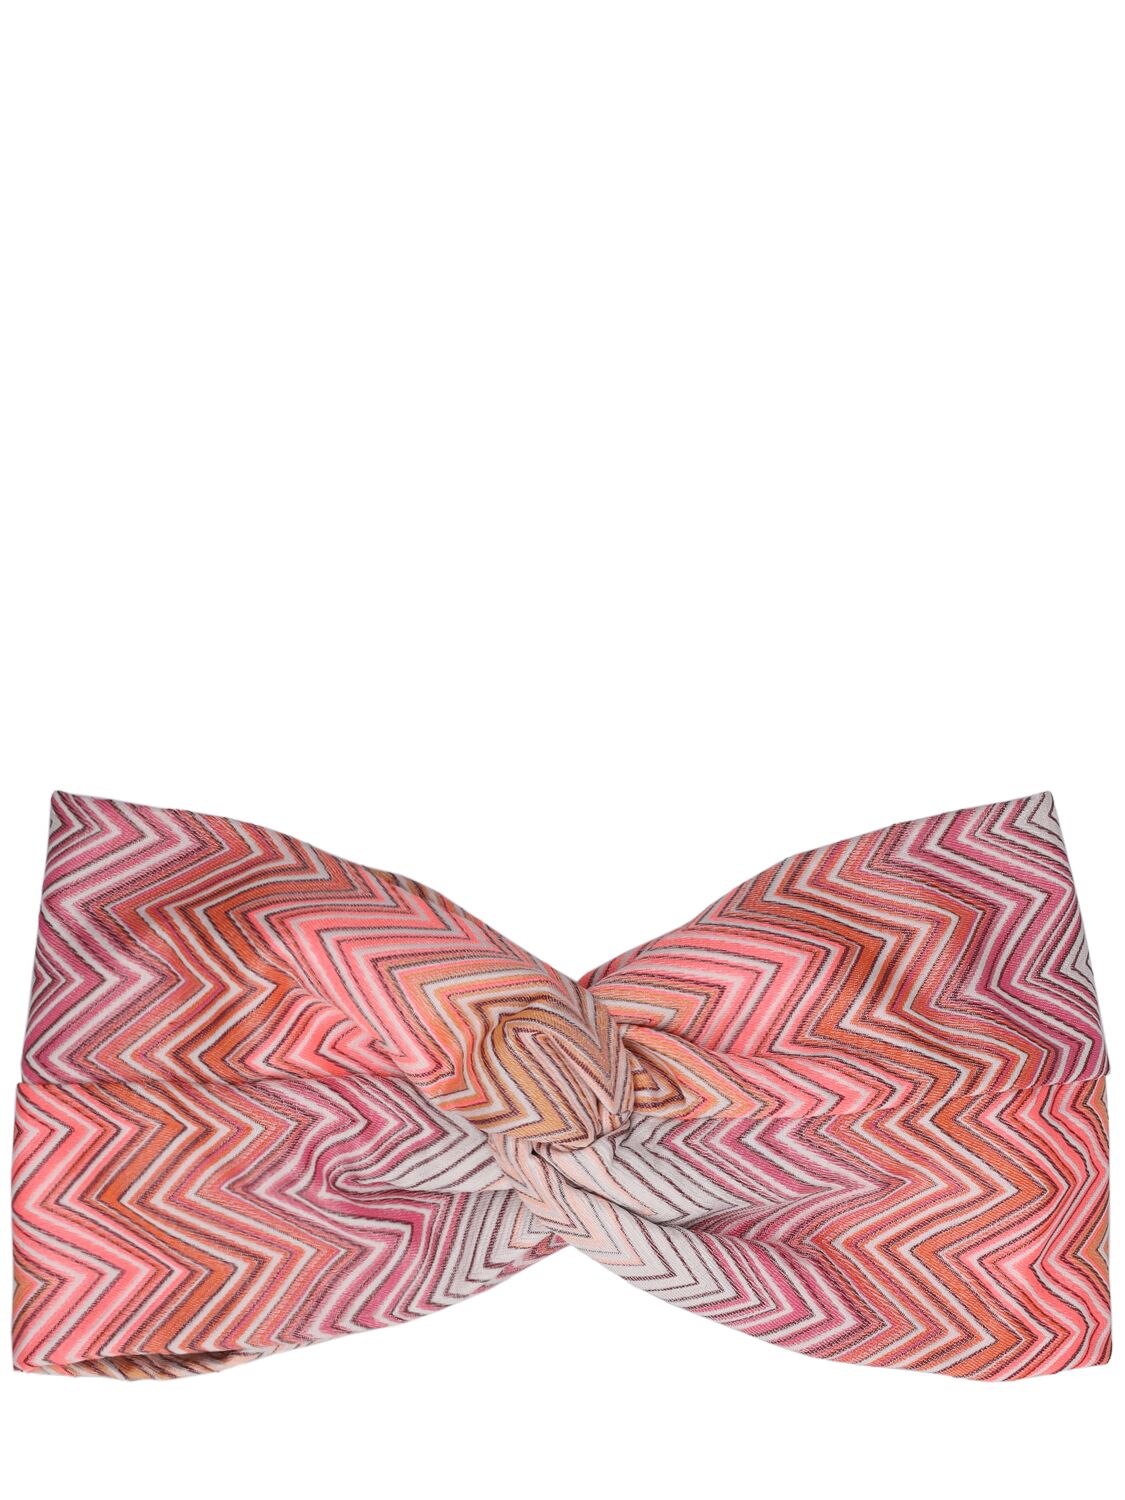 Missoni Knit Headband In Pink,multi